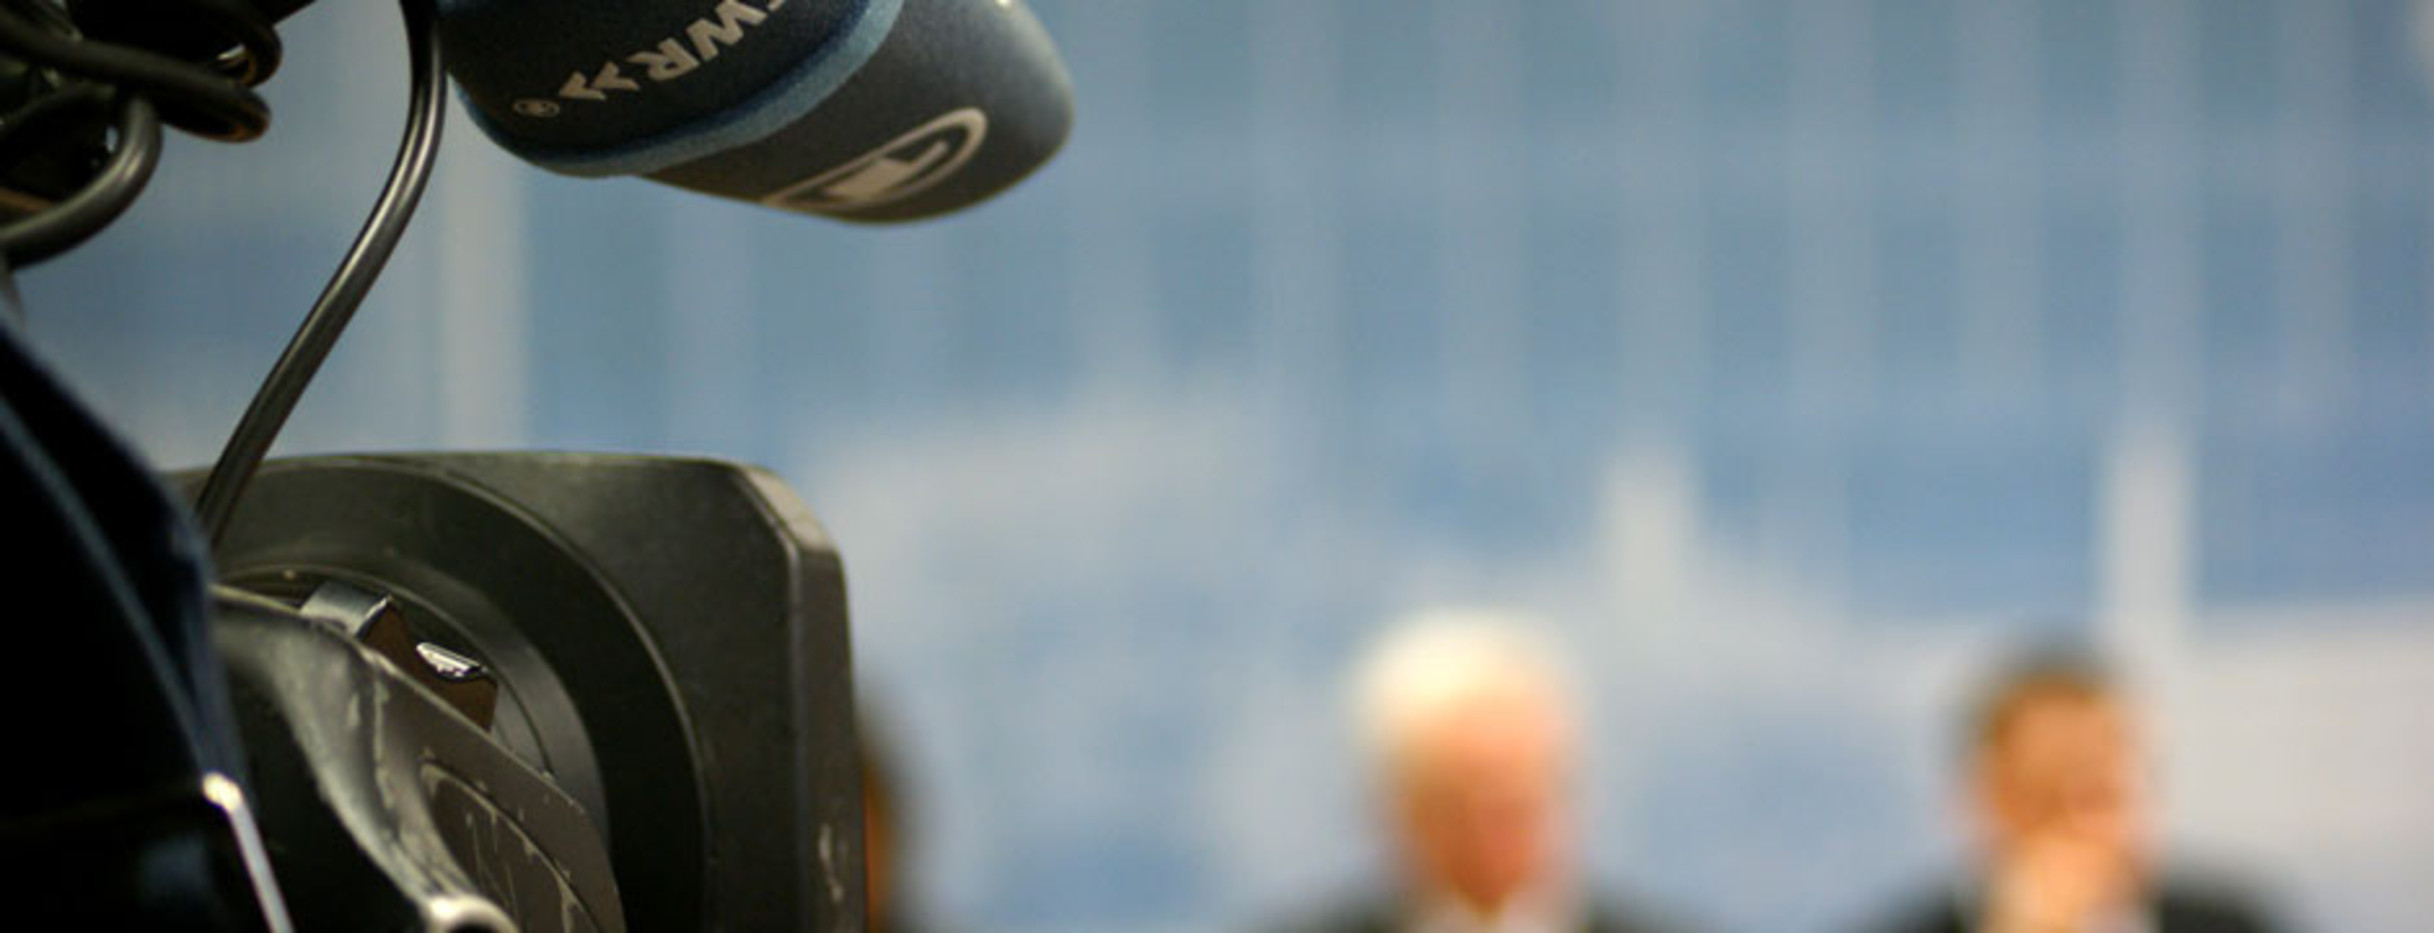 Eine Fernsehkamera filmt auf der Regierungspressekonferenz.